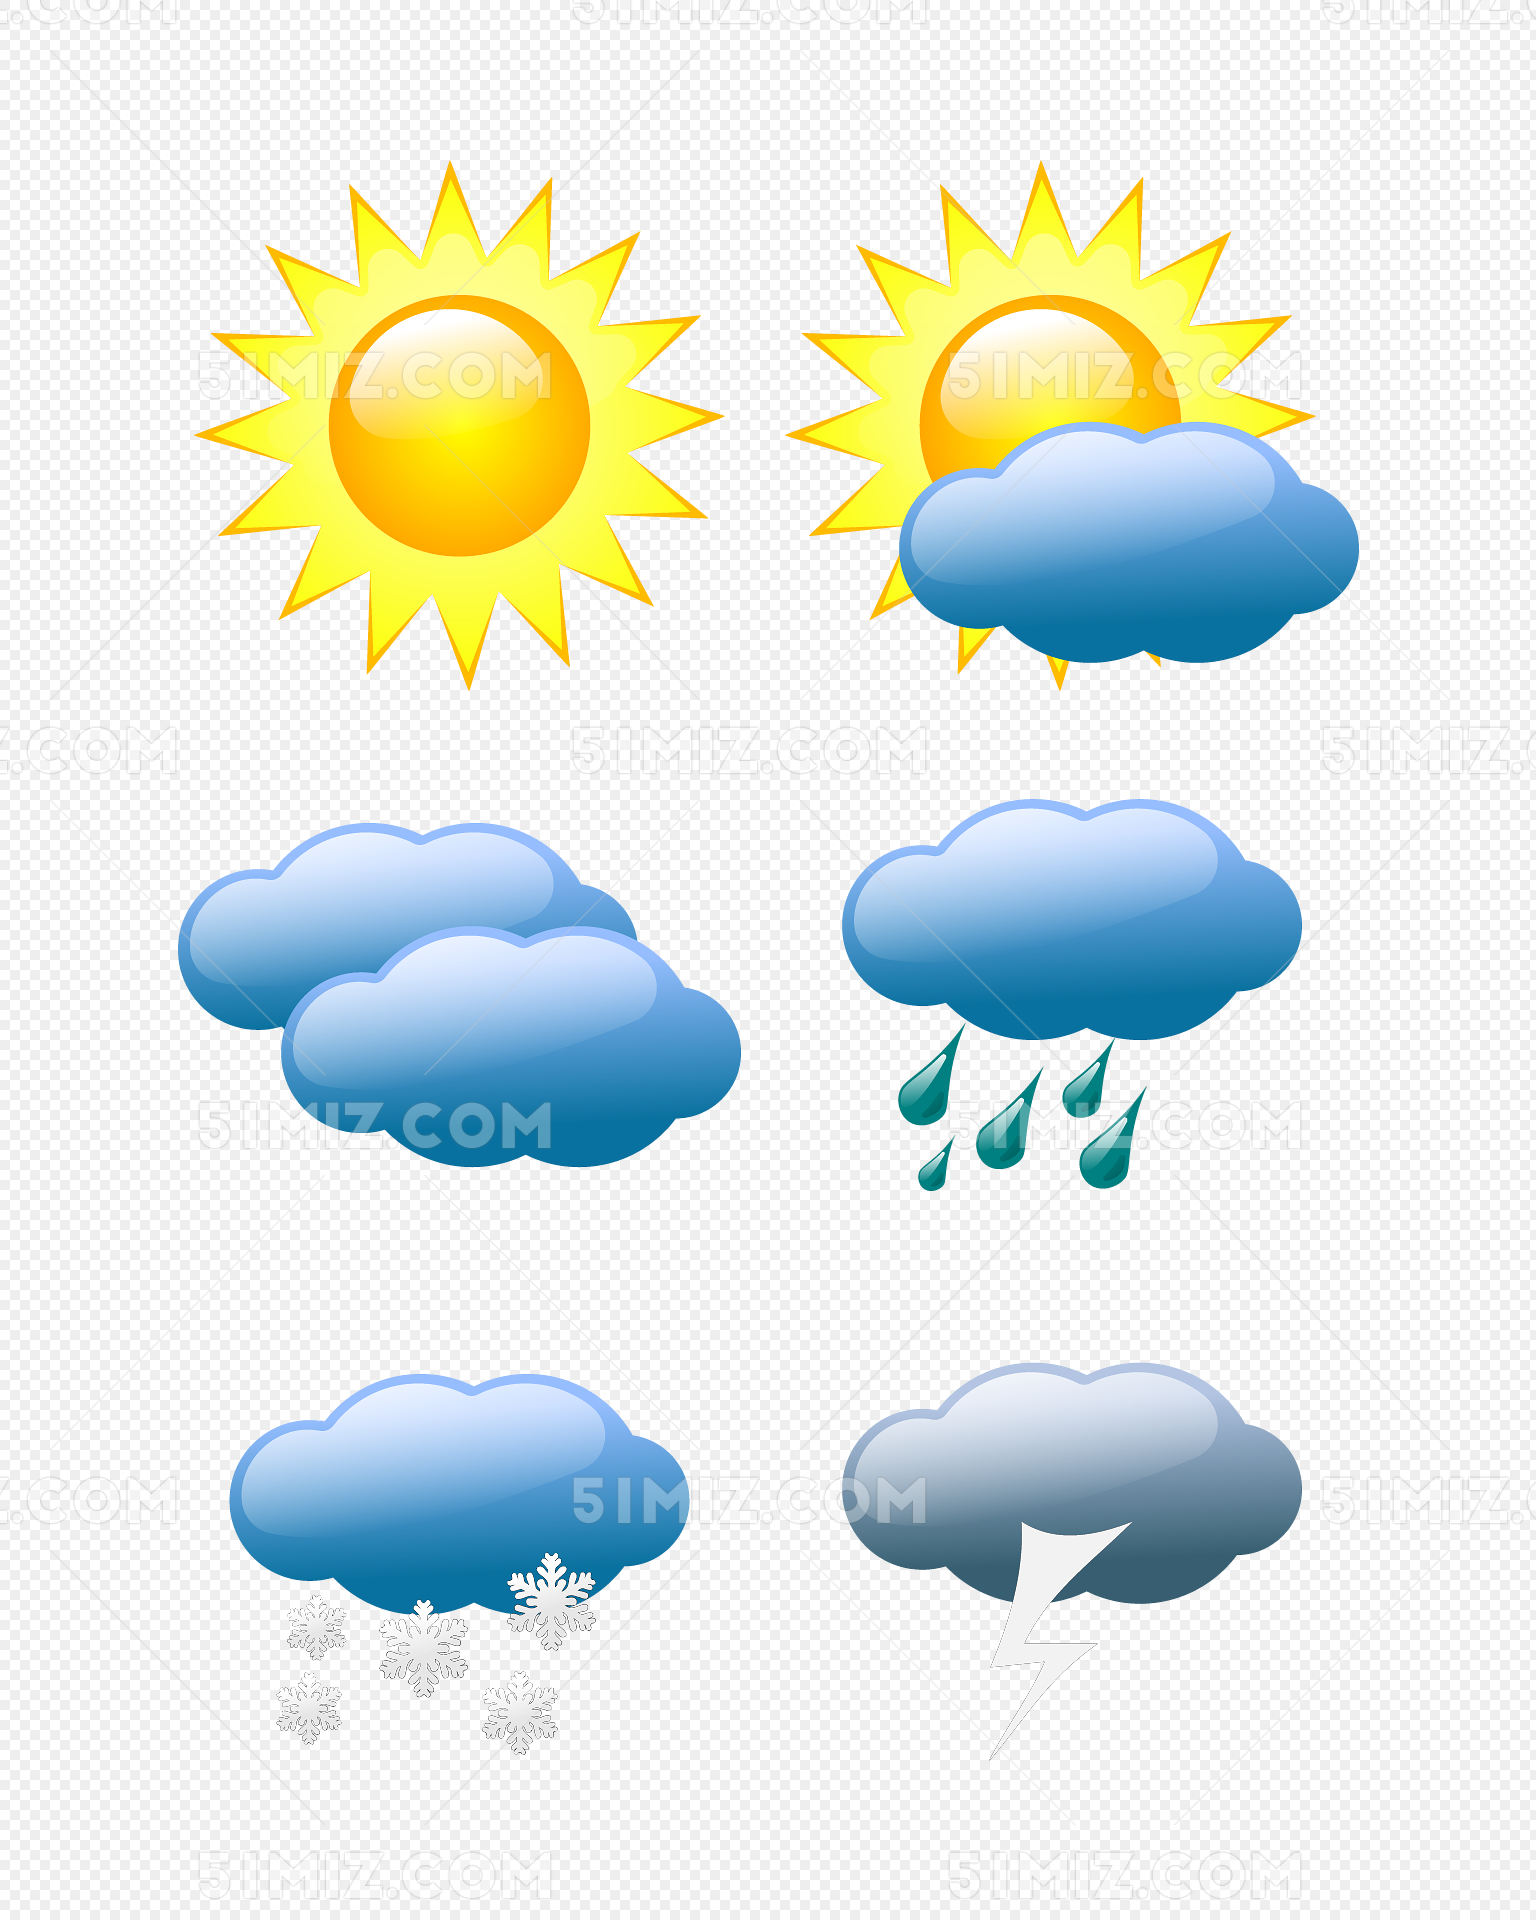 天气预报元素免费下载天气图标天气天气预报图片素材免费下载 - 觅知网